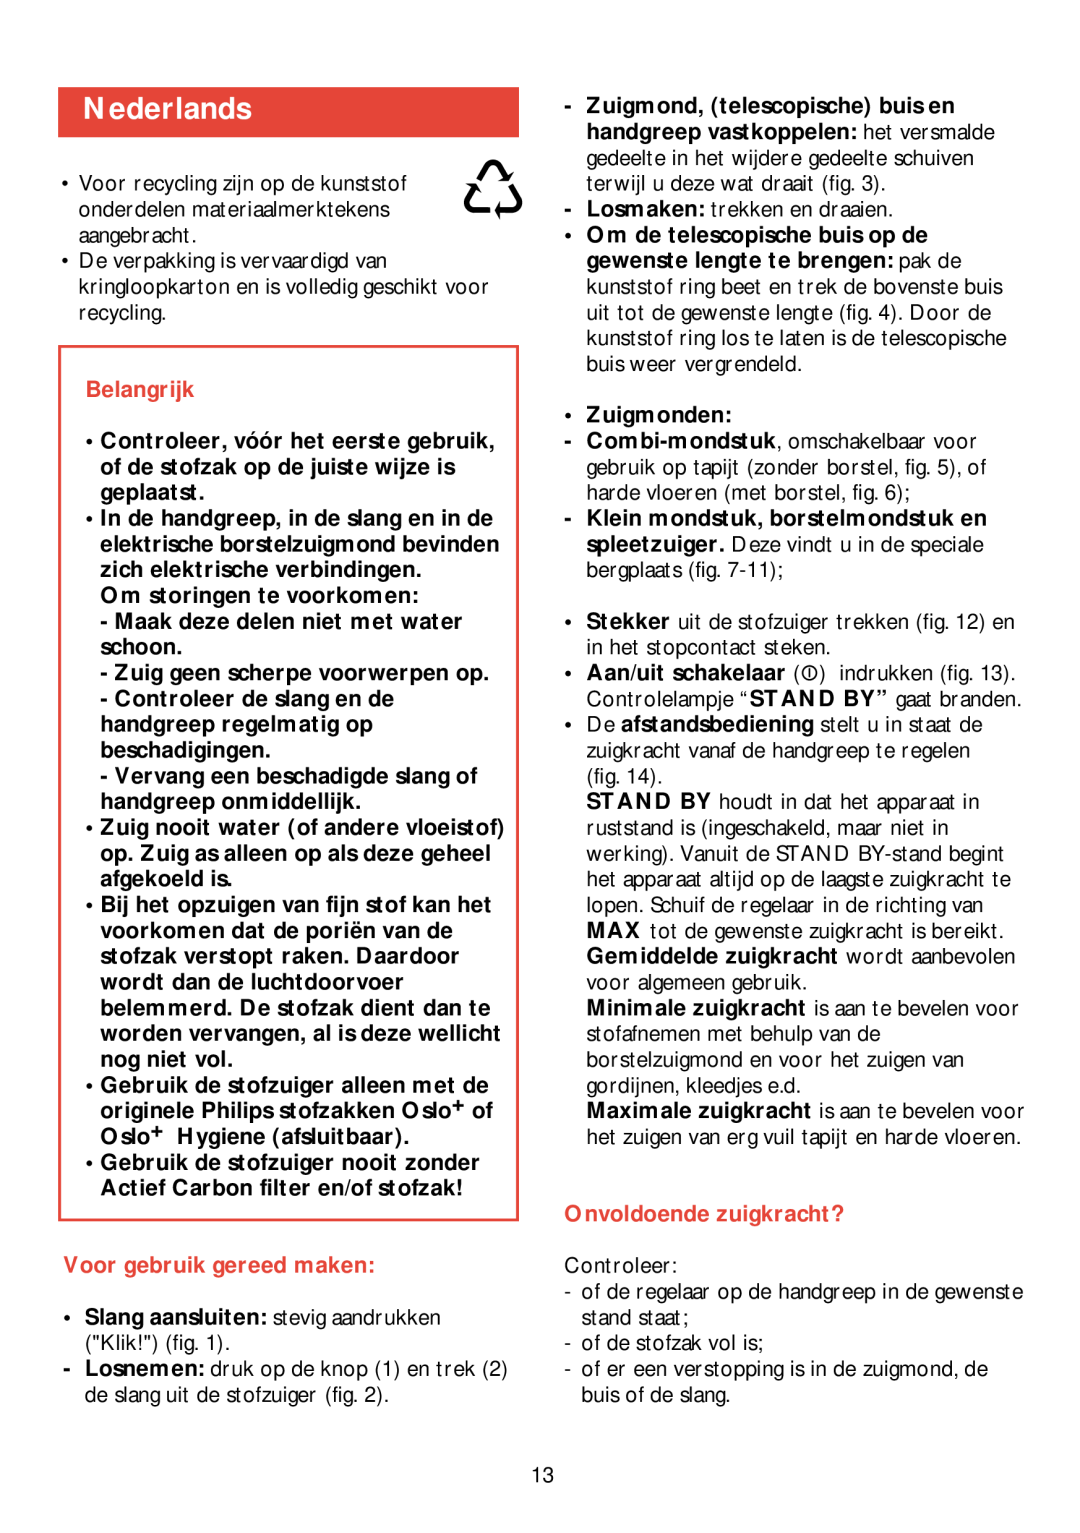 Philips HR 6988 manual Nederlands, Belangrijk, Voor gebruik gereed maken, Onvoldoende zuigkracht? 